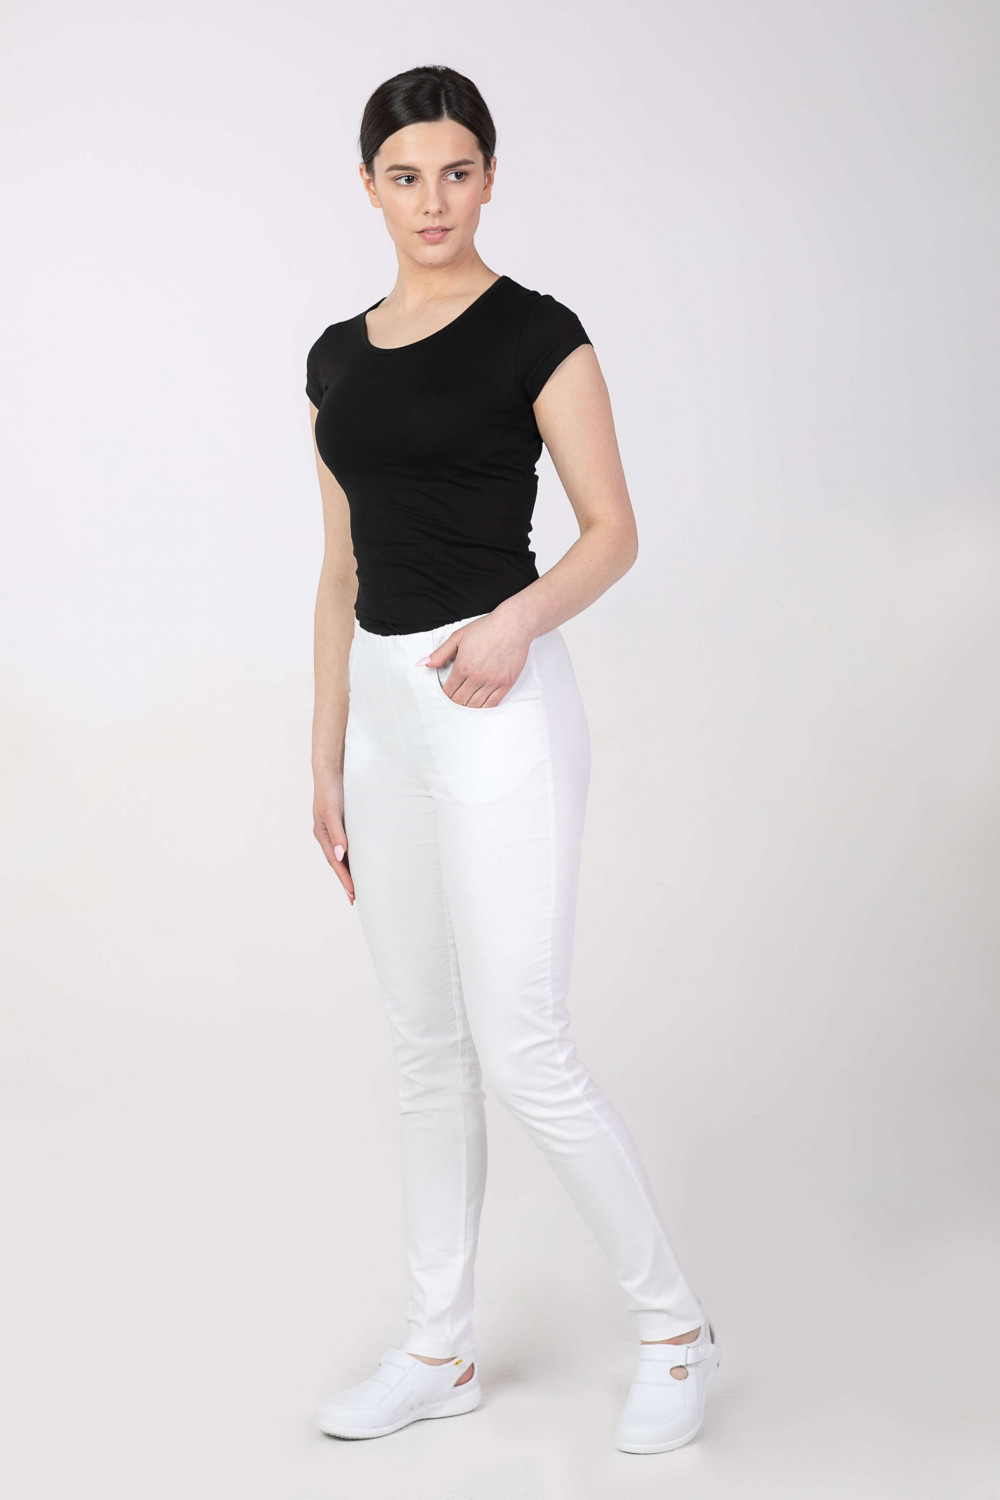 M-100X Spodnie damskie elastyczne kosmetyczne medyczne do pracy kolor biały